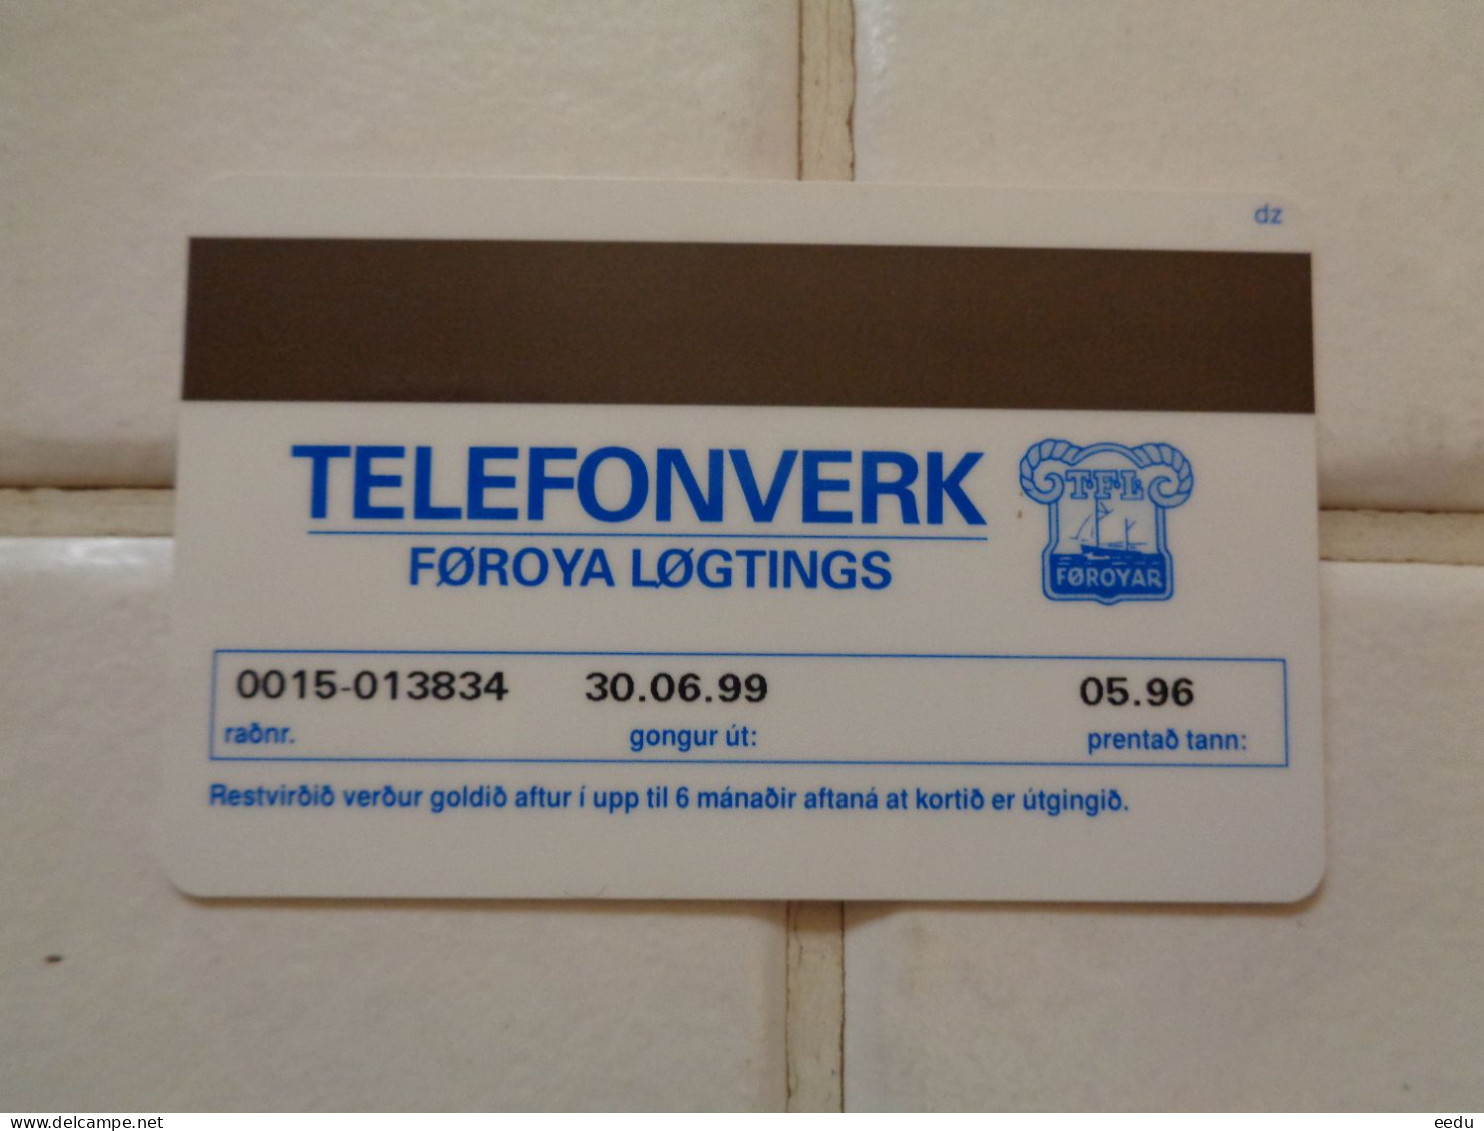 Faroe Island Phonecard - Féroé (Iles)